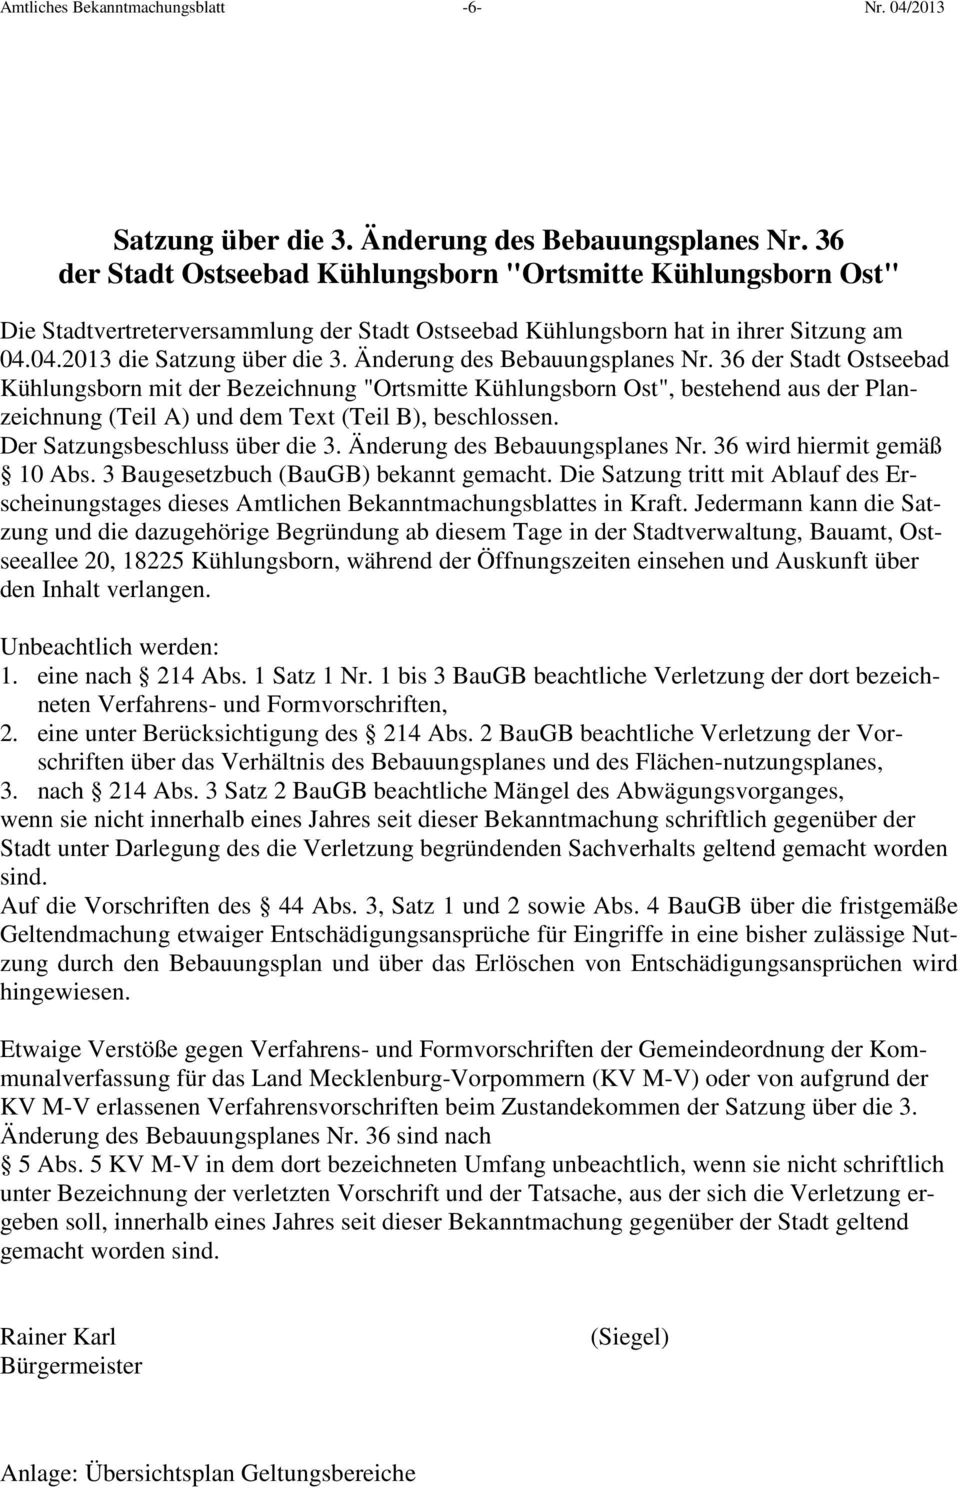 Änderung des Bebauungsplanes Nr. 36 der Stadt Ostseebad Kühlungsborn mit der Bezeichnung "Ortsmitte Kühlungsborn Ost", bestehend aus der Planzeichnung (Teil A) und dem Text (Teil B), beschlossen.